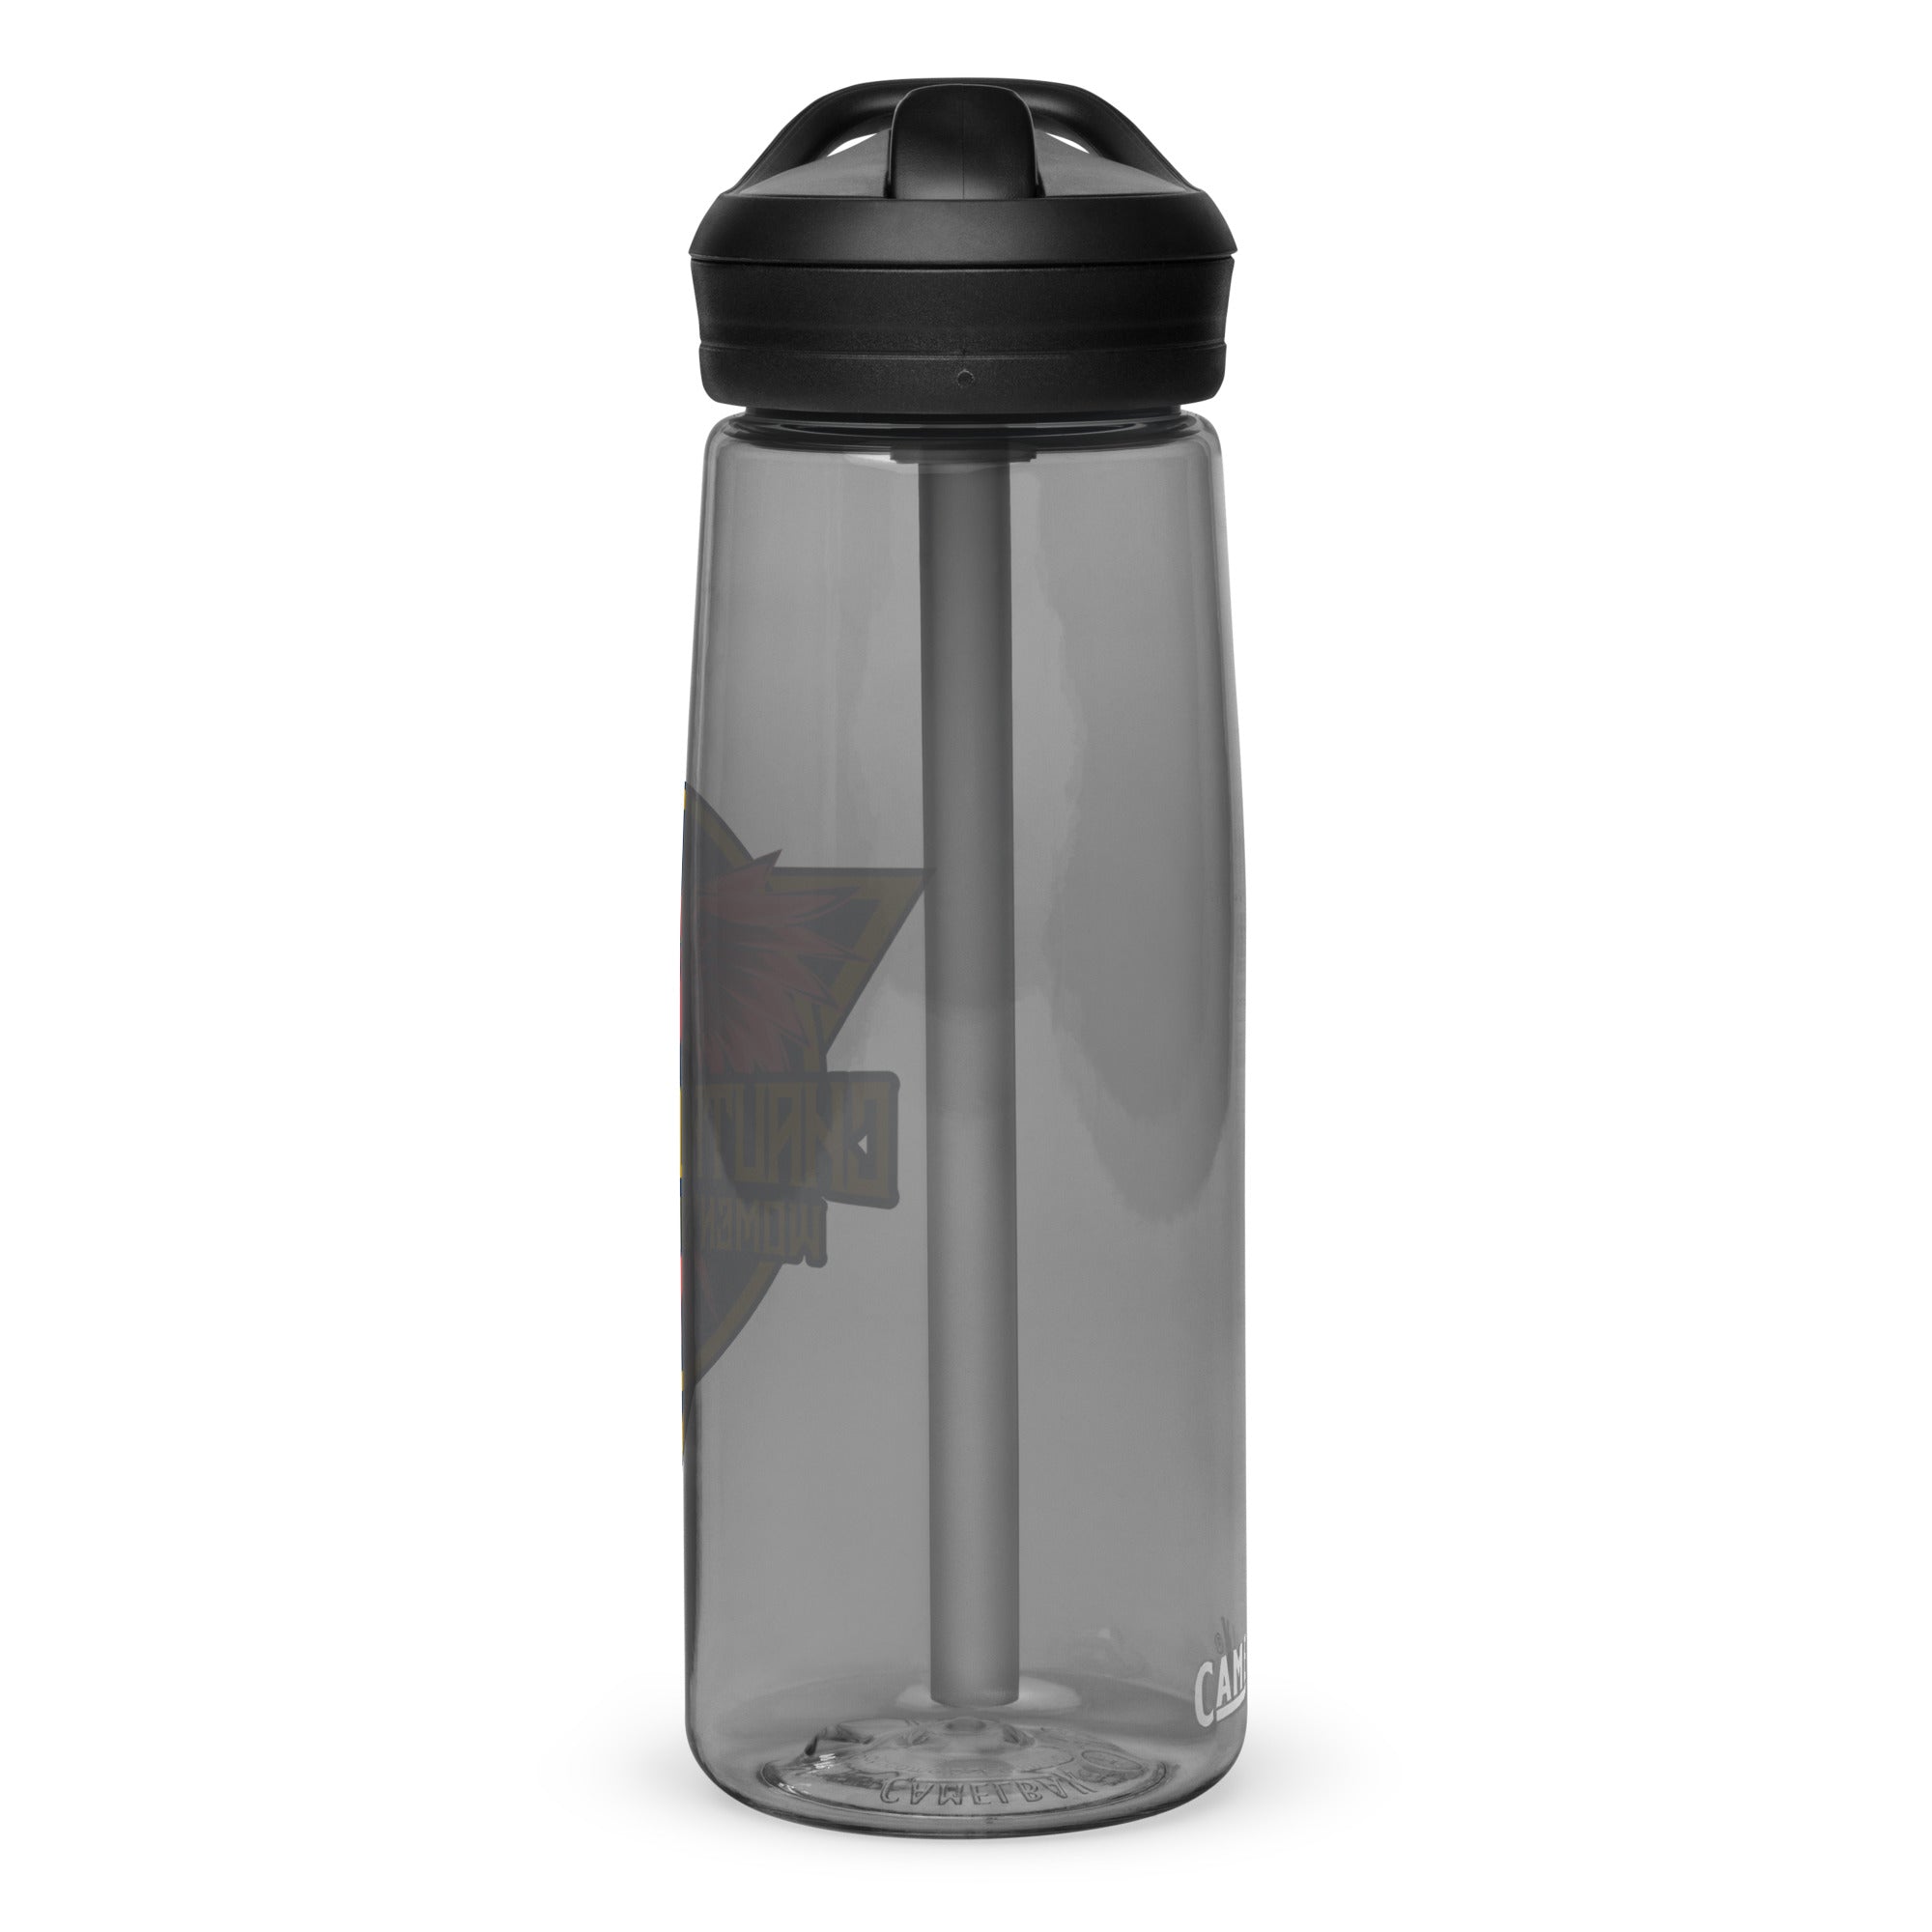 CLCS Sports water bottle